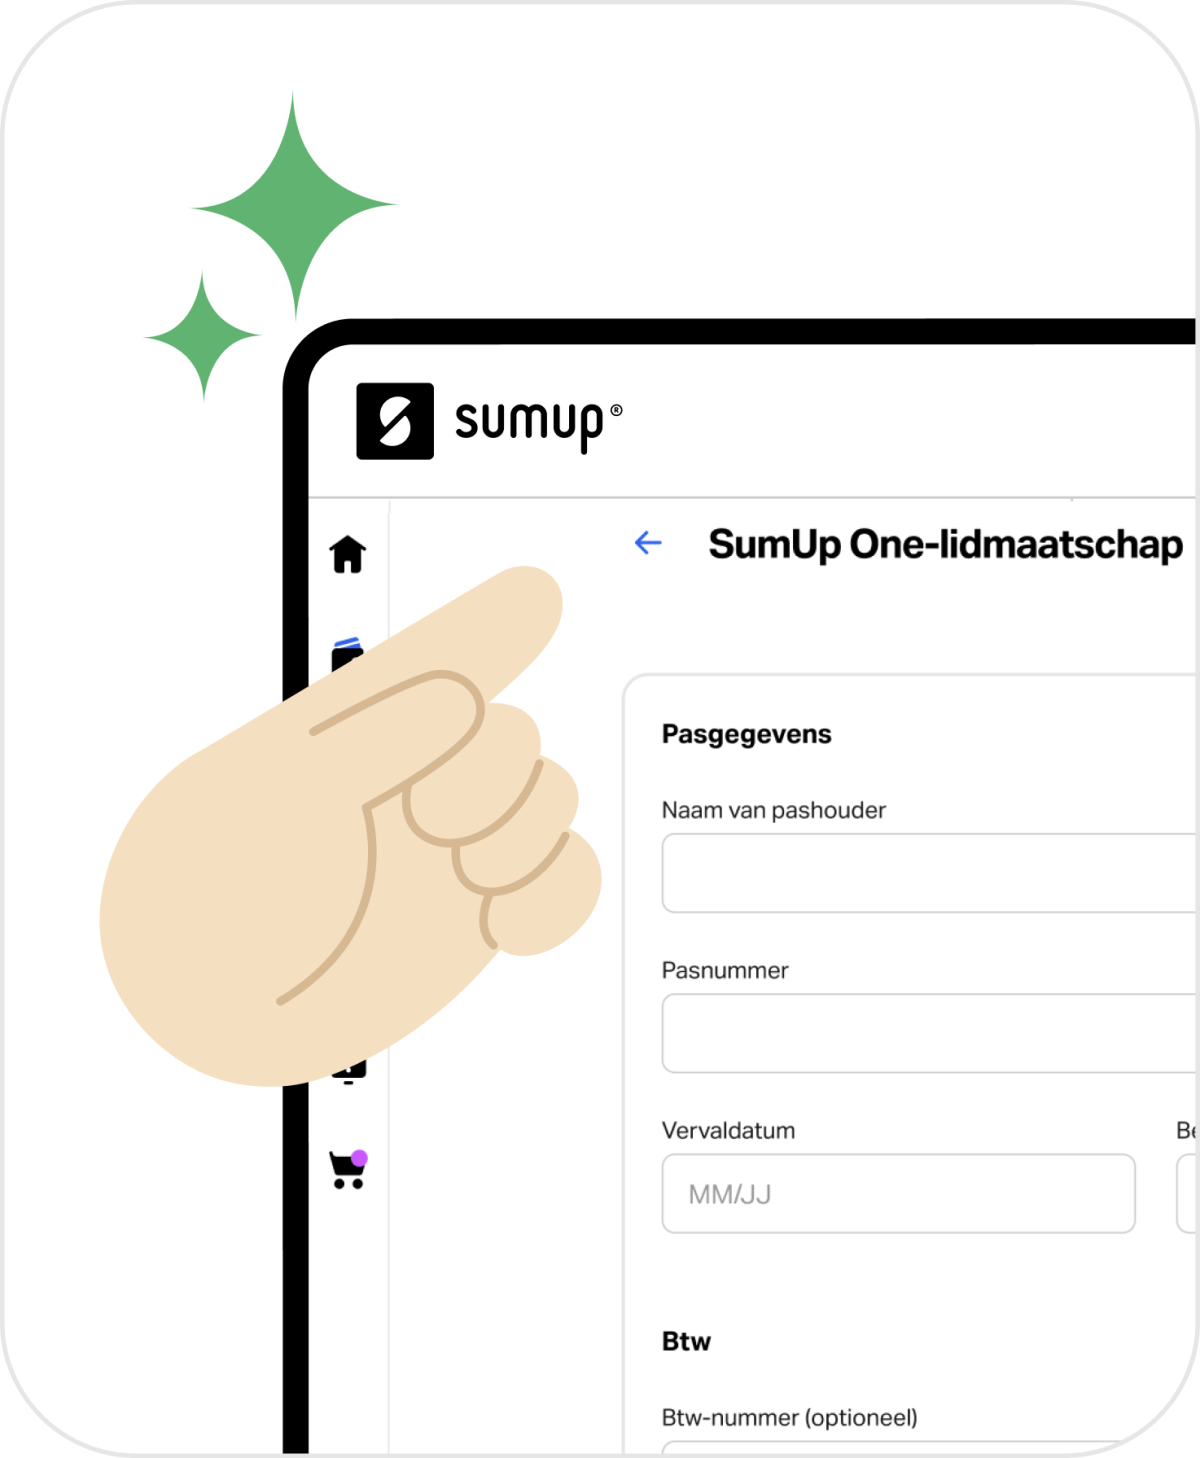 Afbeelding die laat zien waar mensen zich kunnen aanmelden voor SumUp One